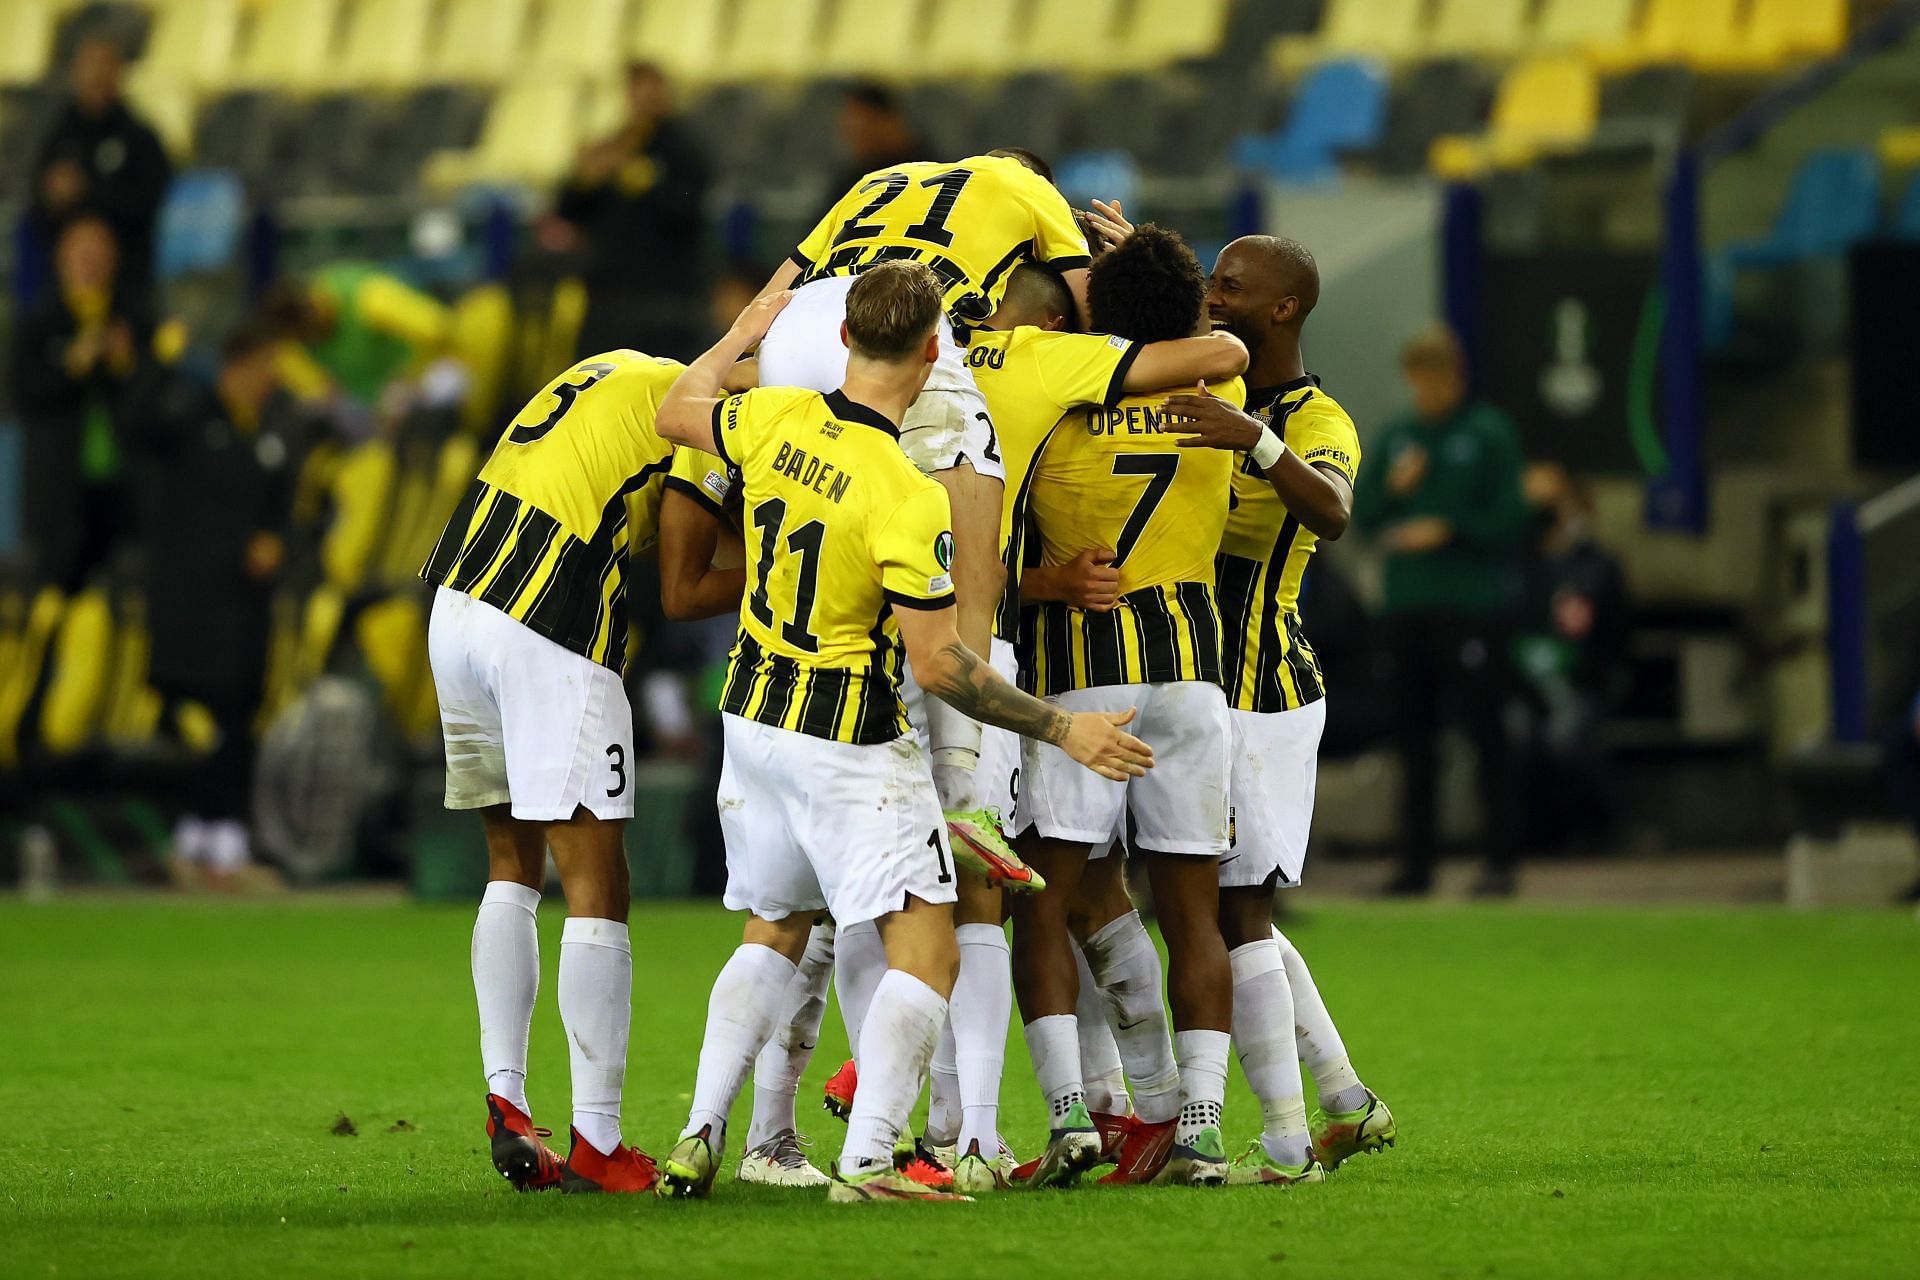 Vitesse will host Waalwijk on Sunday